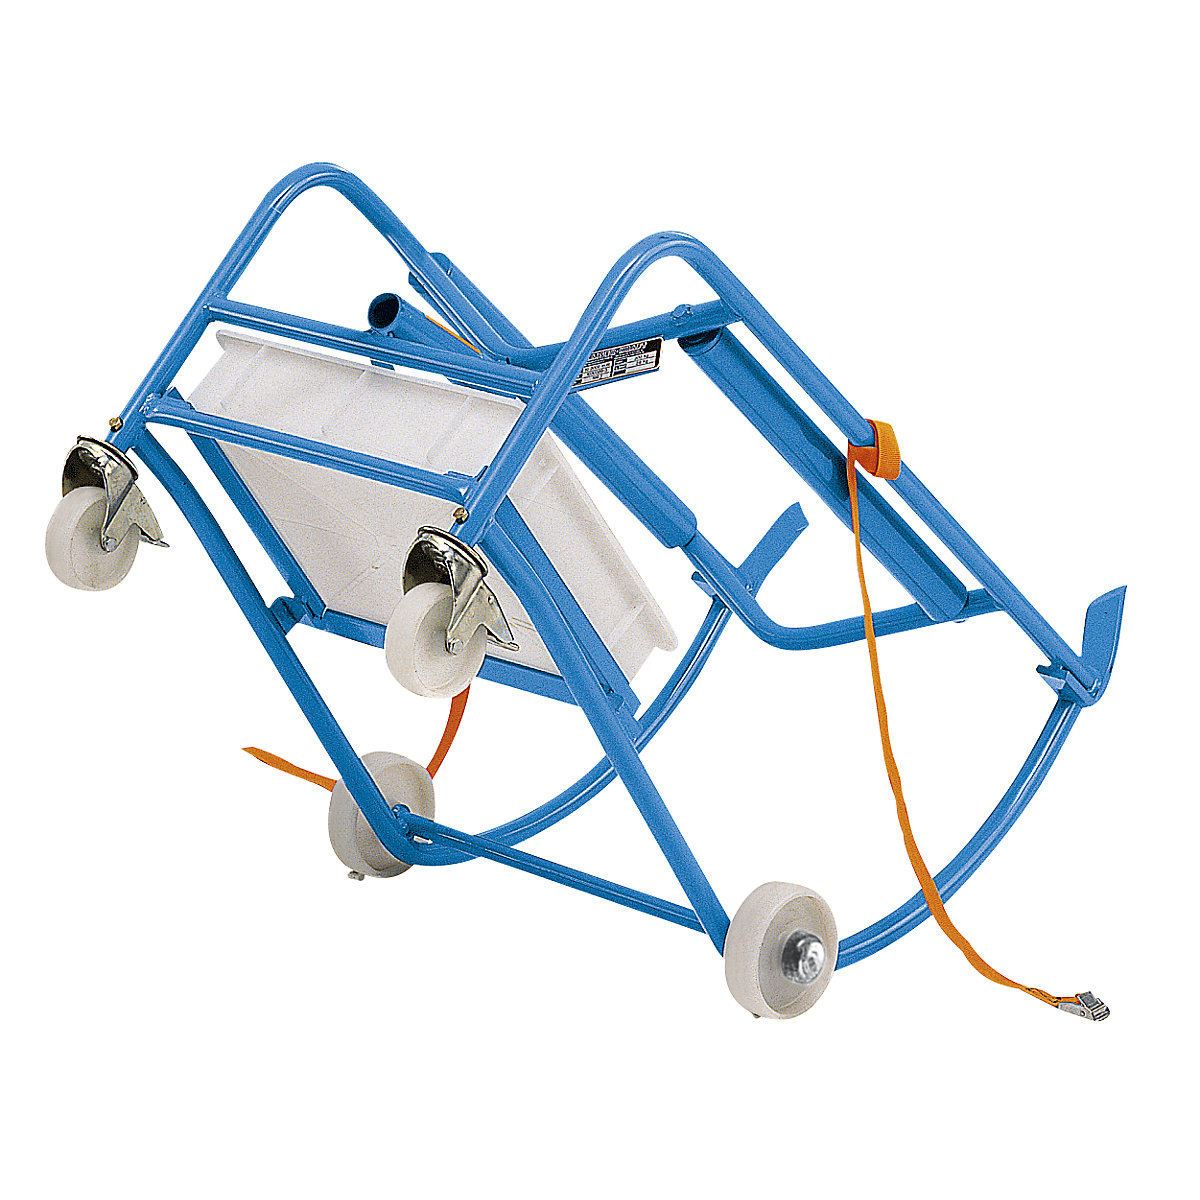 EUROKRAFTpro – Basculador para bidão de 200 litros, apoio para bidões com 4 rodas de plástico, com cuba coletora de óleo